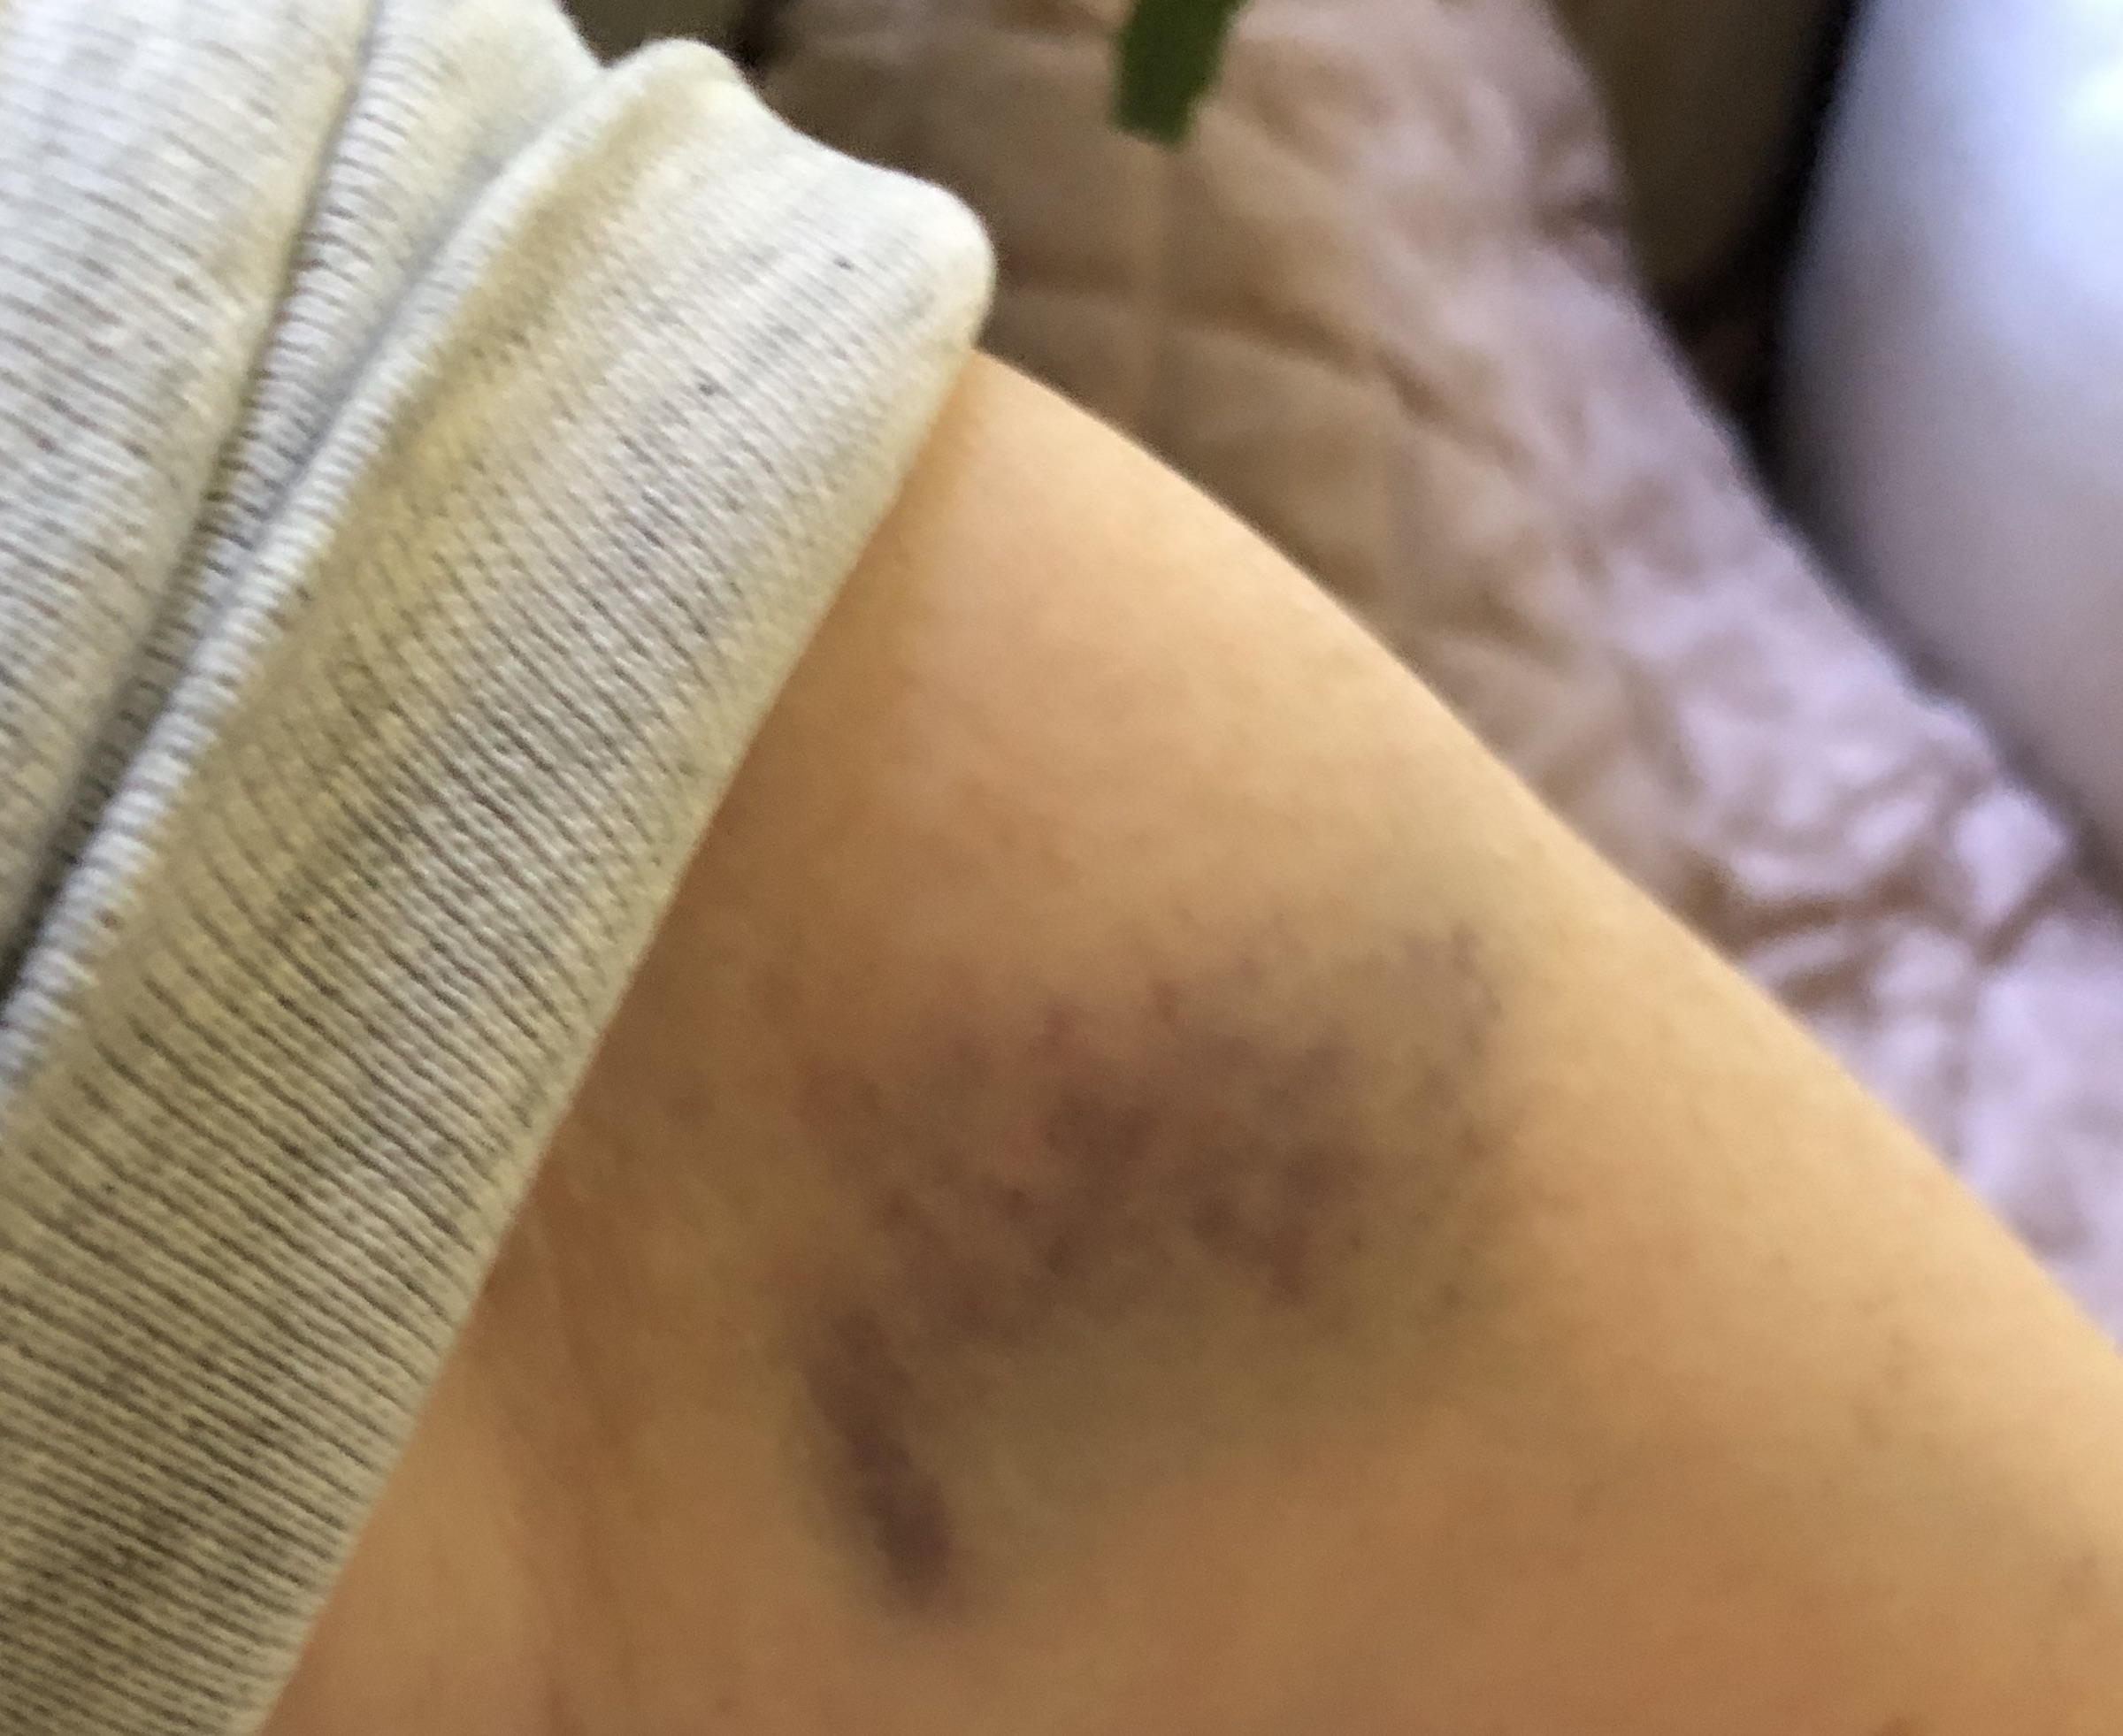 arm bruise